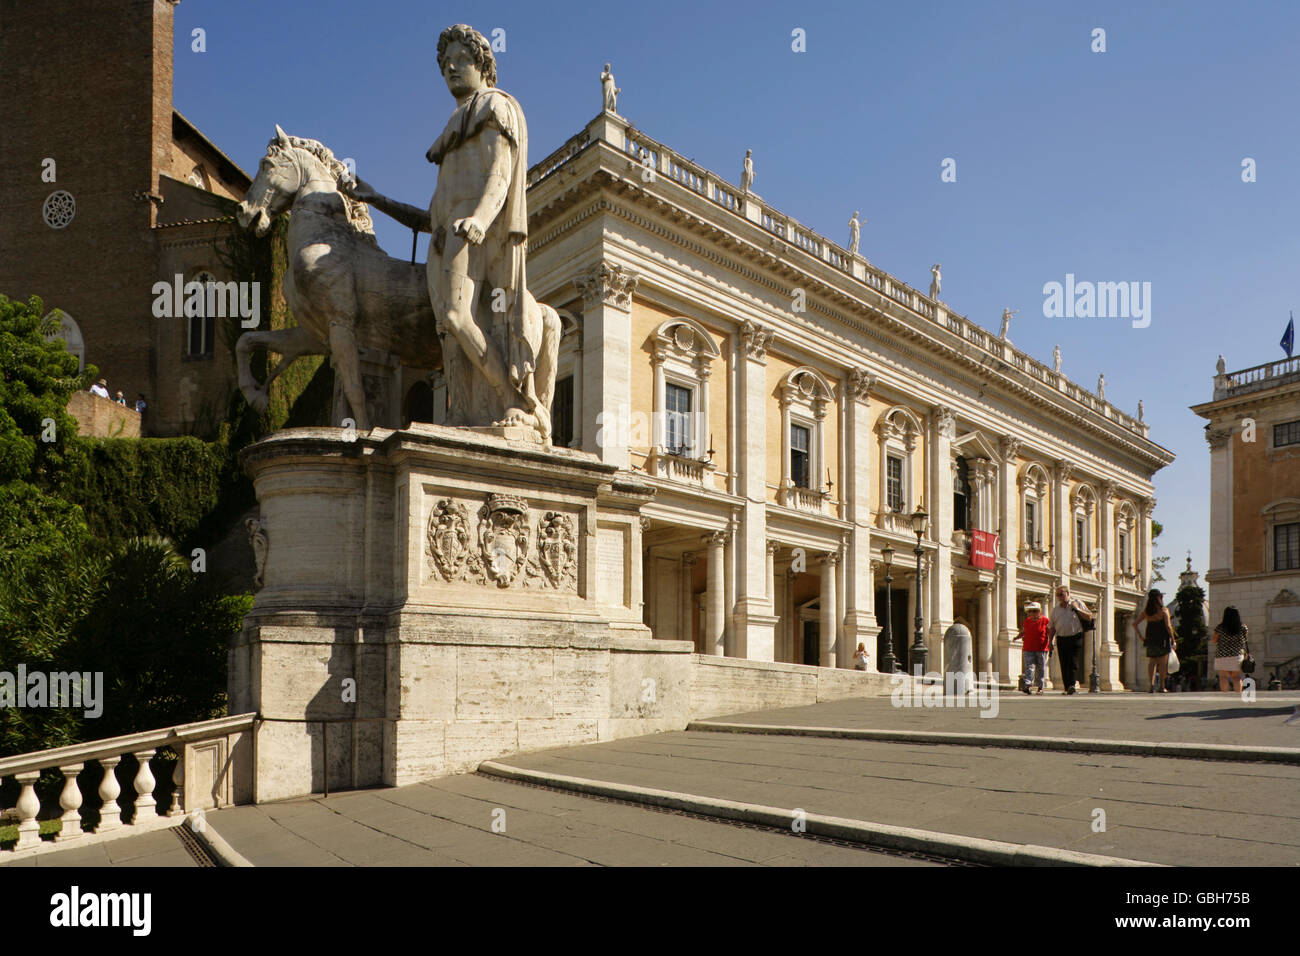 Palazzo Nuovo abritant les Musei Capitolini Raccolta lapidaire de Michel-Ange et la Piazza del Campidoglio, Rome, Italie. Banque D'Images